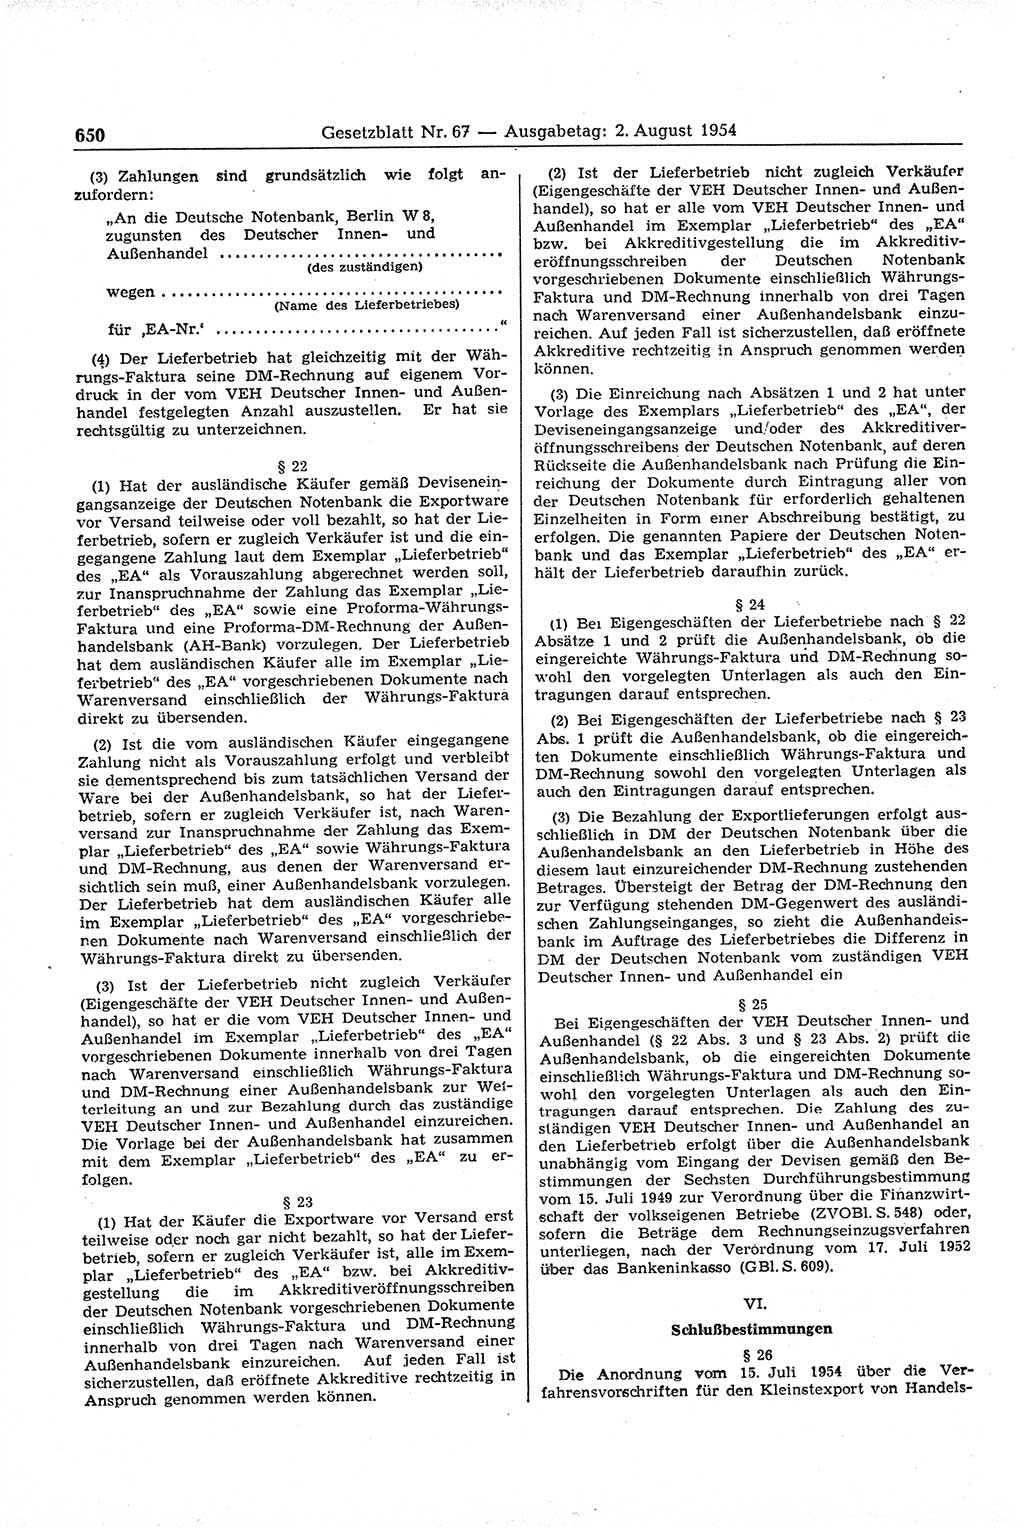 Gesetzblatt (GBl.) der Deutschen Demokratischen Republik (DDR) 1954, Seite 650 (GBl. DDR 1954, S. 650)